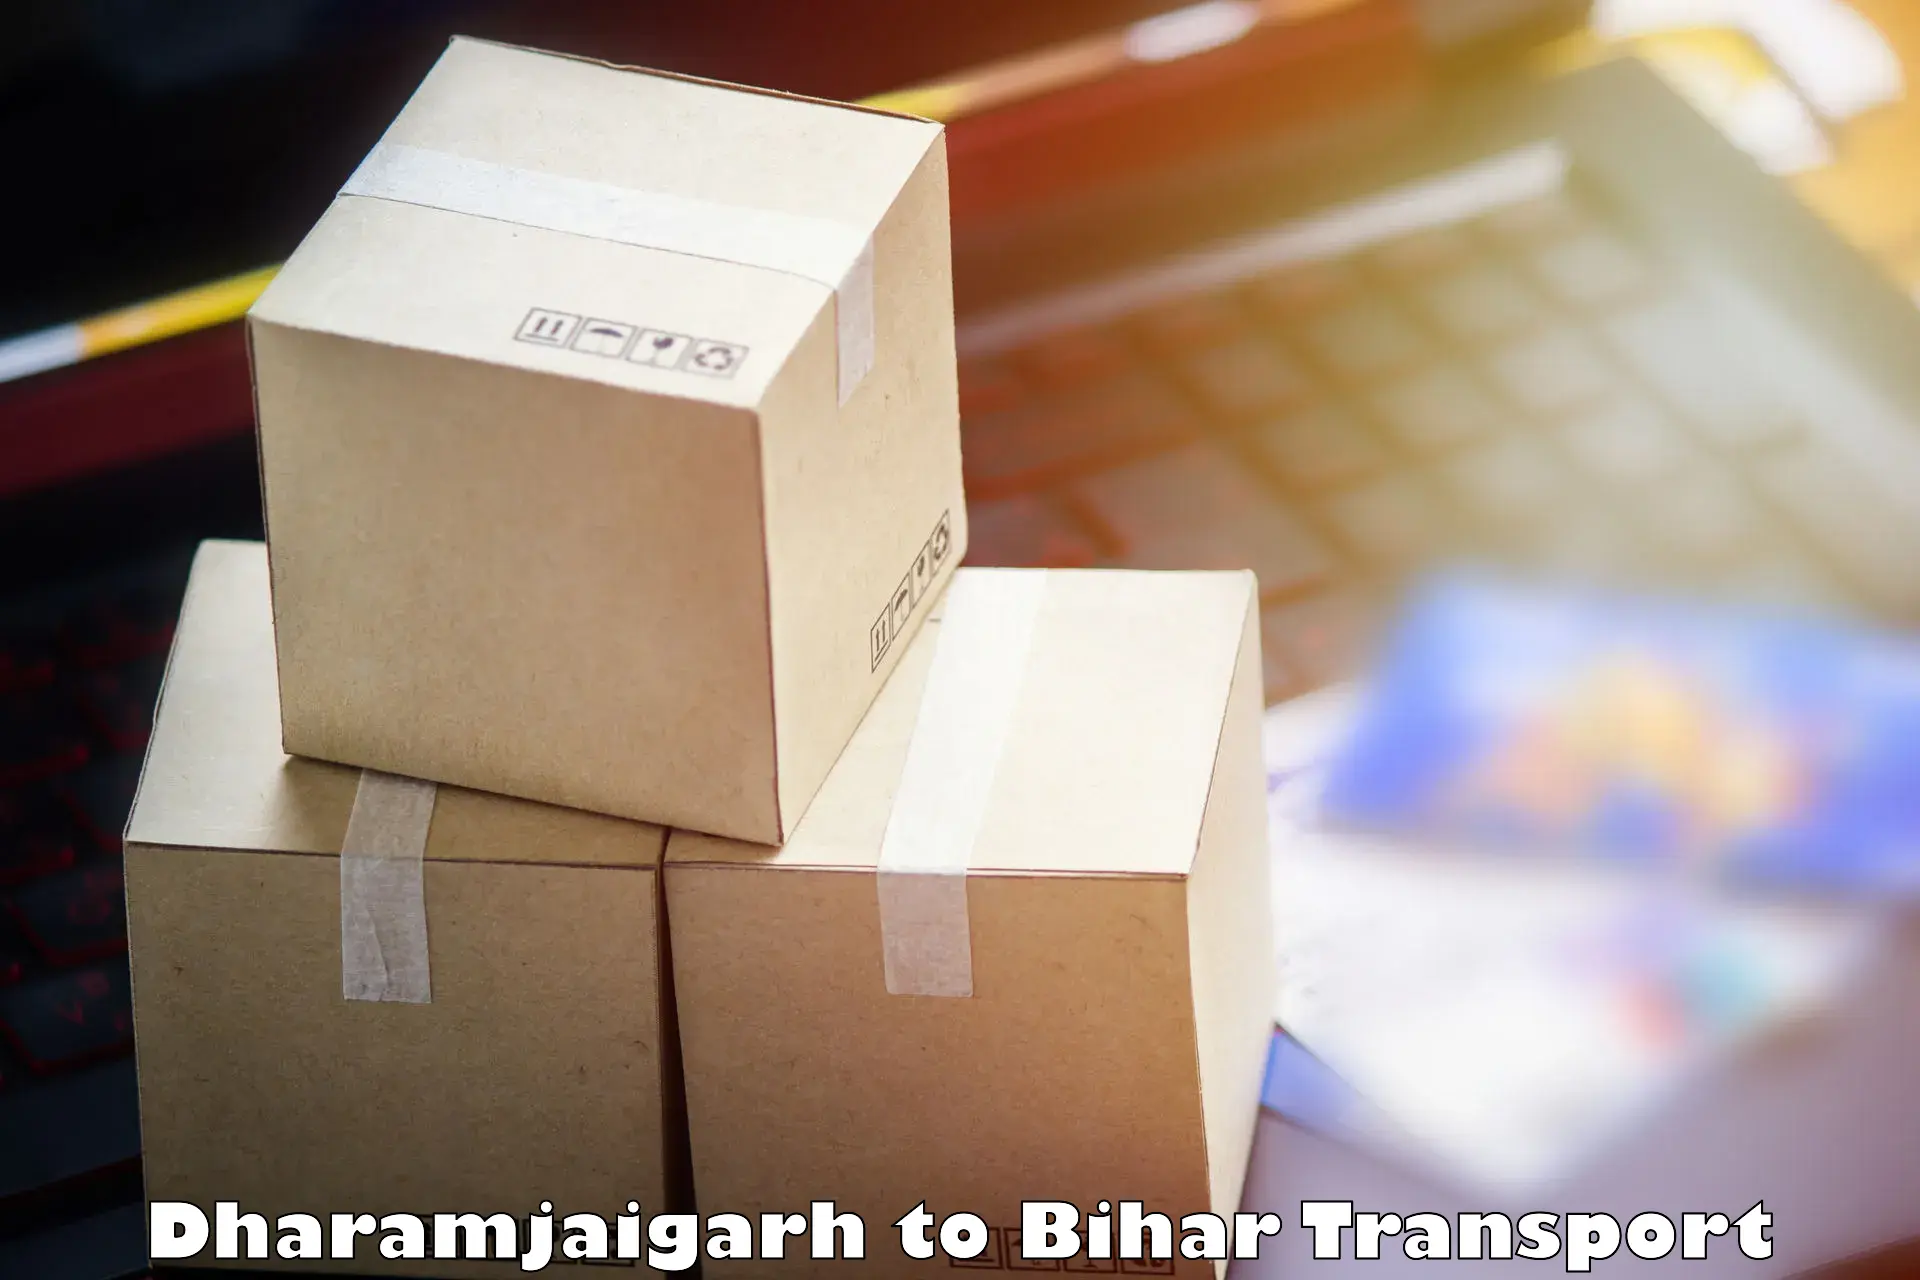 Pick up transport service Dharamjaigarh to Kishunganj